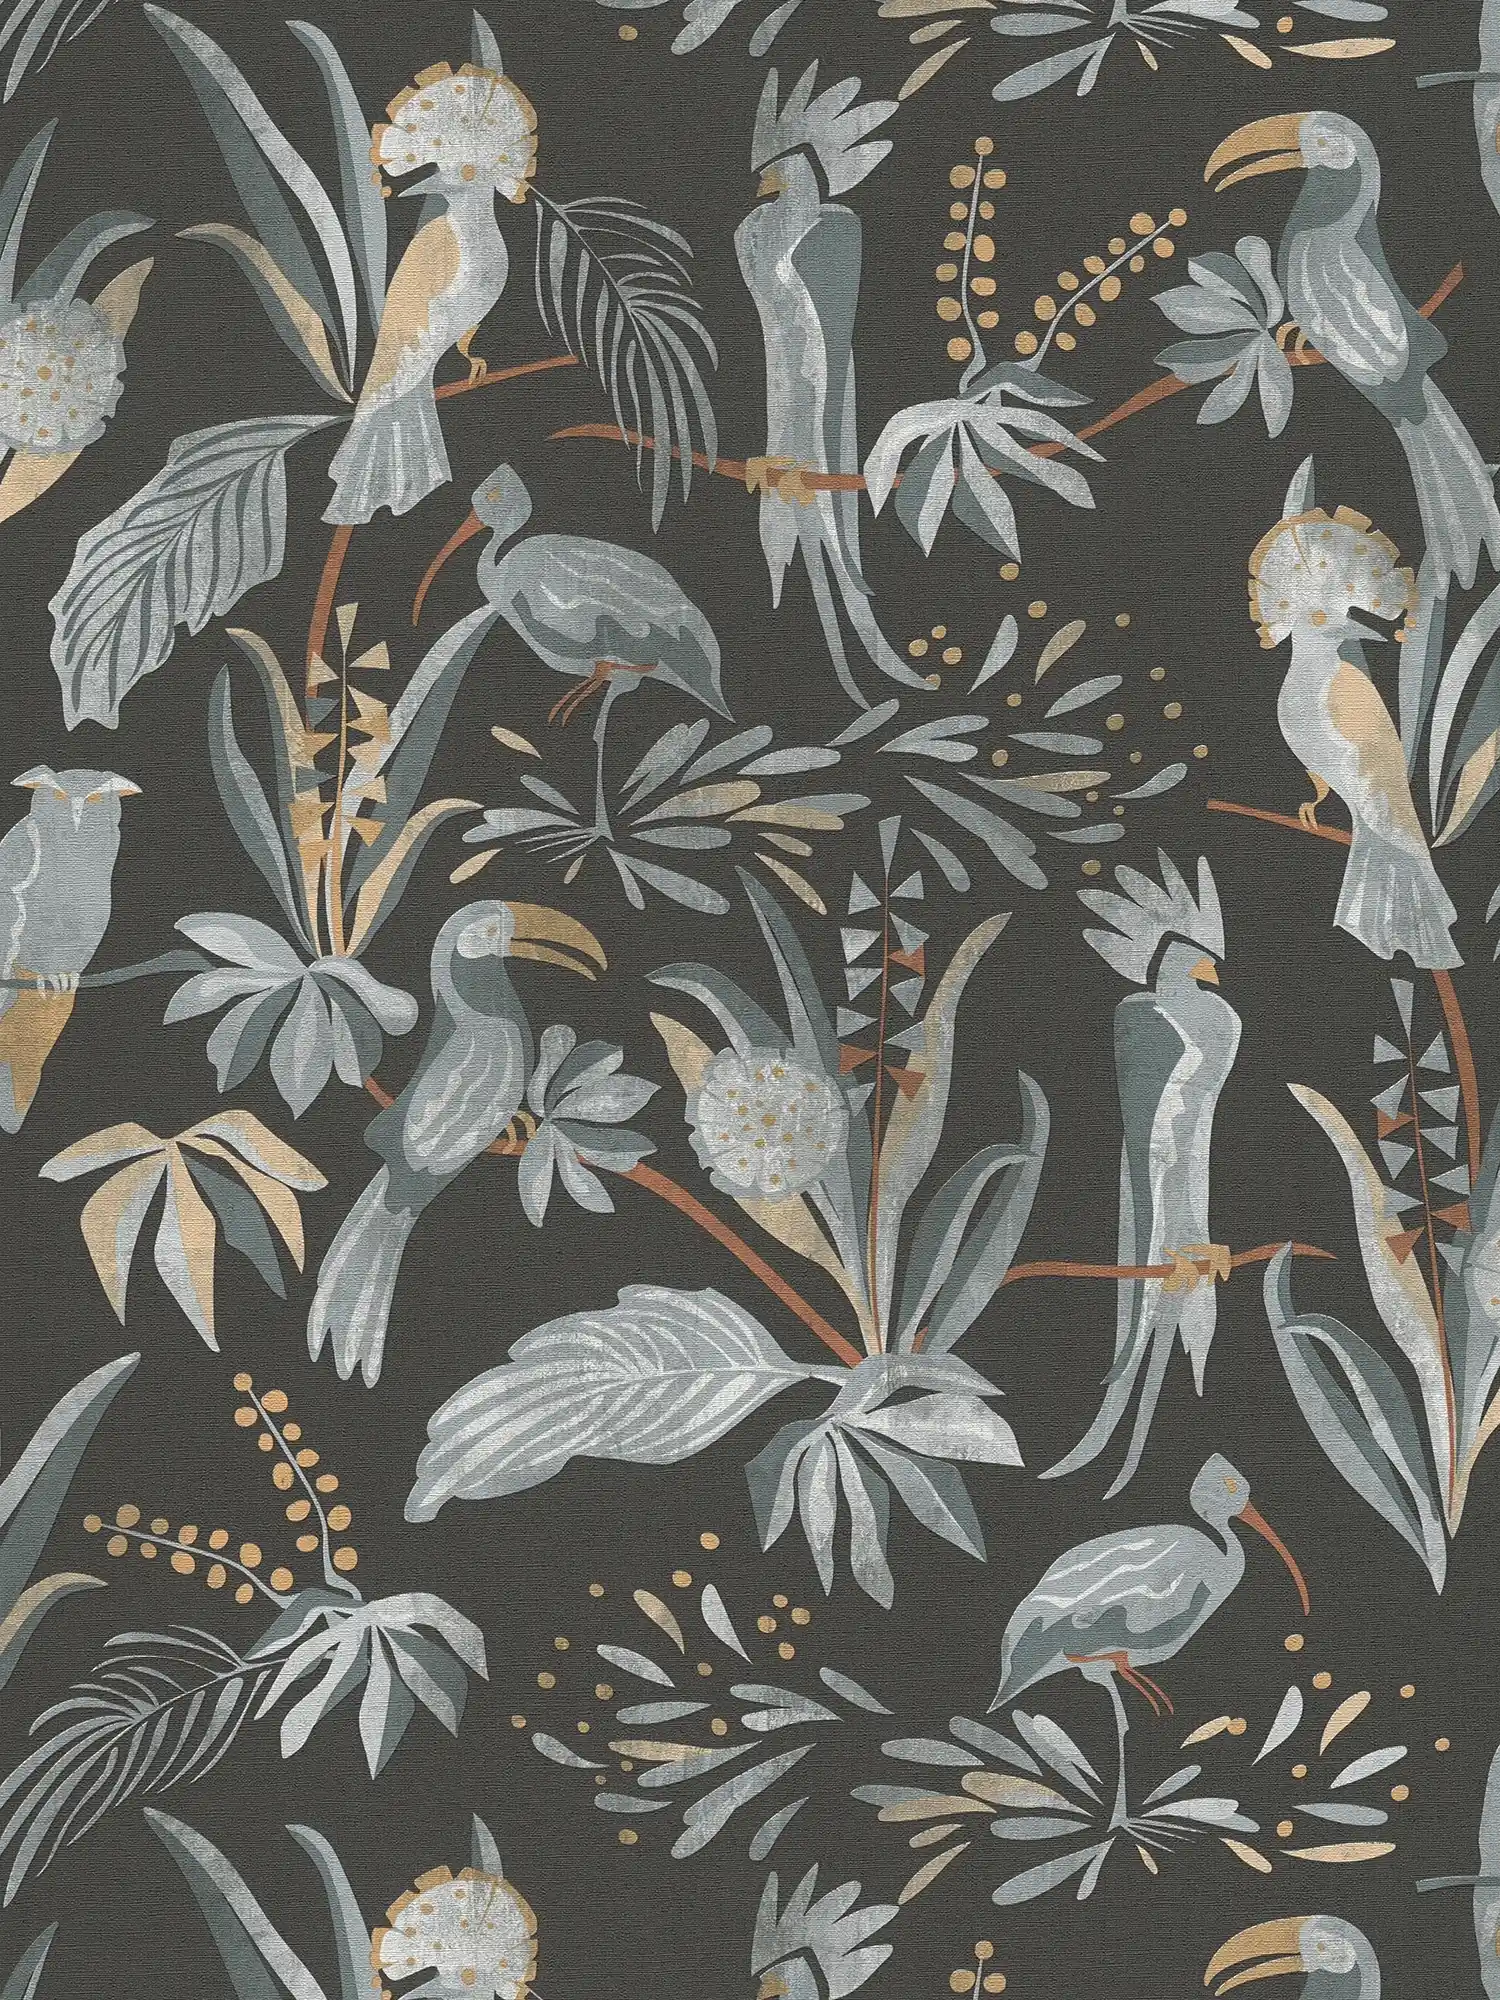 Tapete mit Dschungelpflanzen und Vögeln – Schwarz, Grau, Beige
